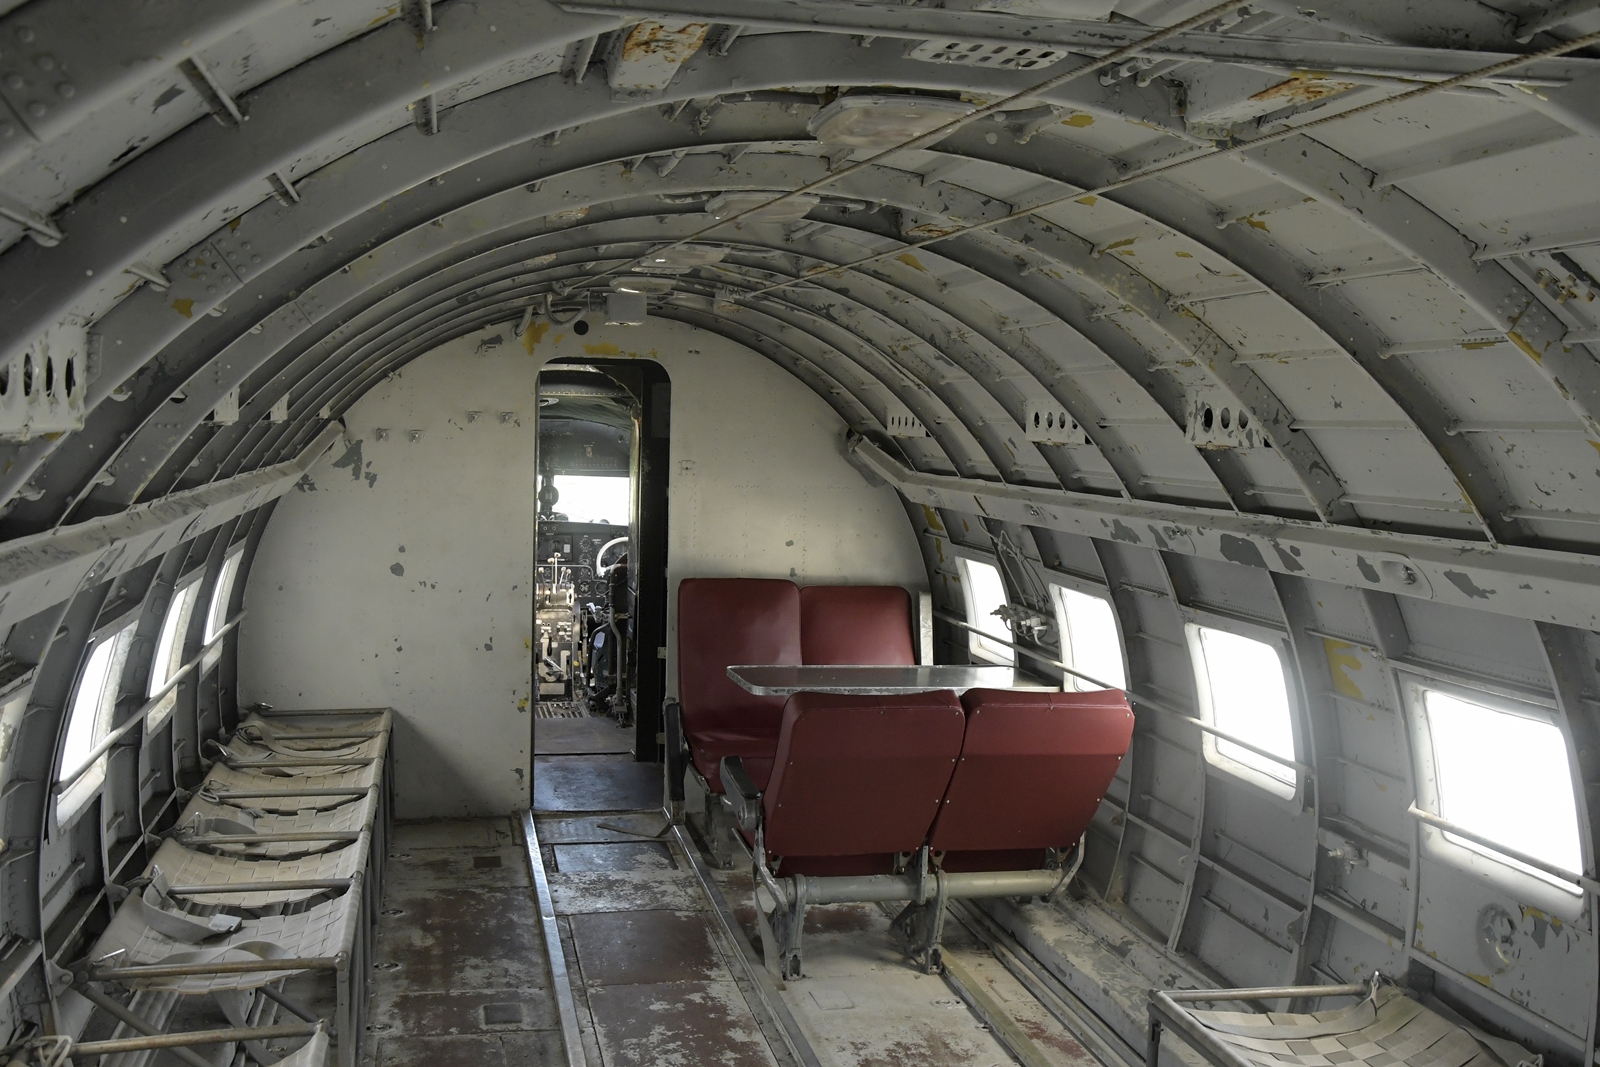 Wnętrze jednego z samolotów na wystawie plenerowej, w środku są zaledwie cztery fotele.